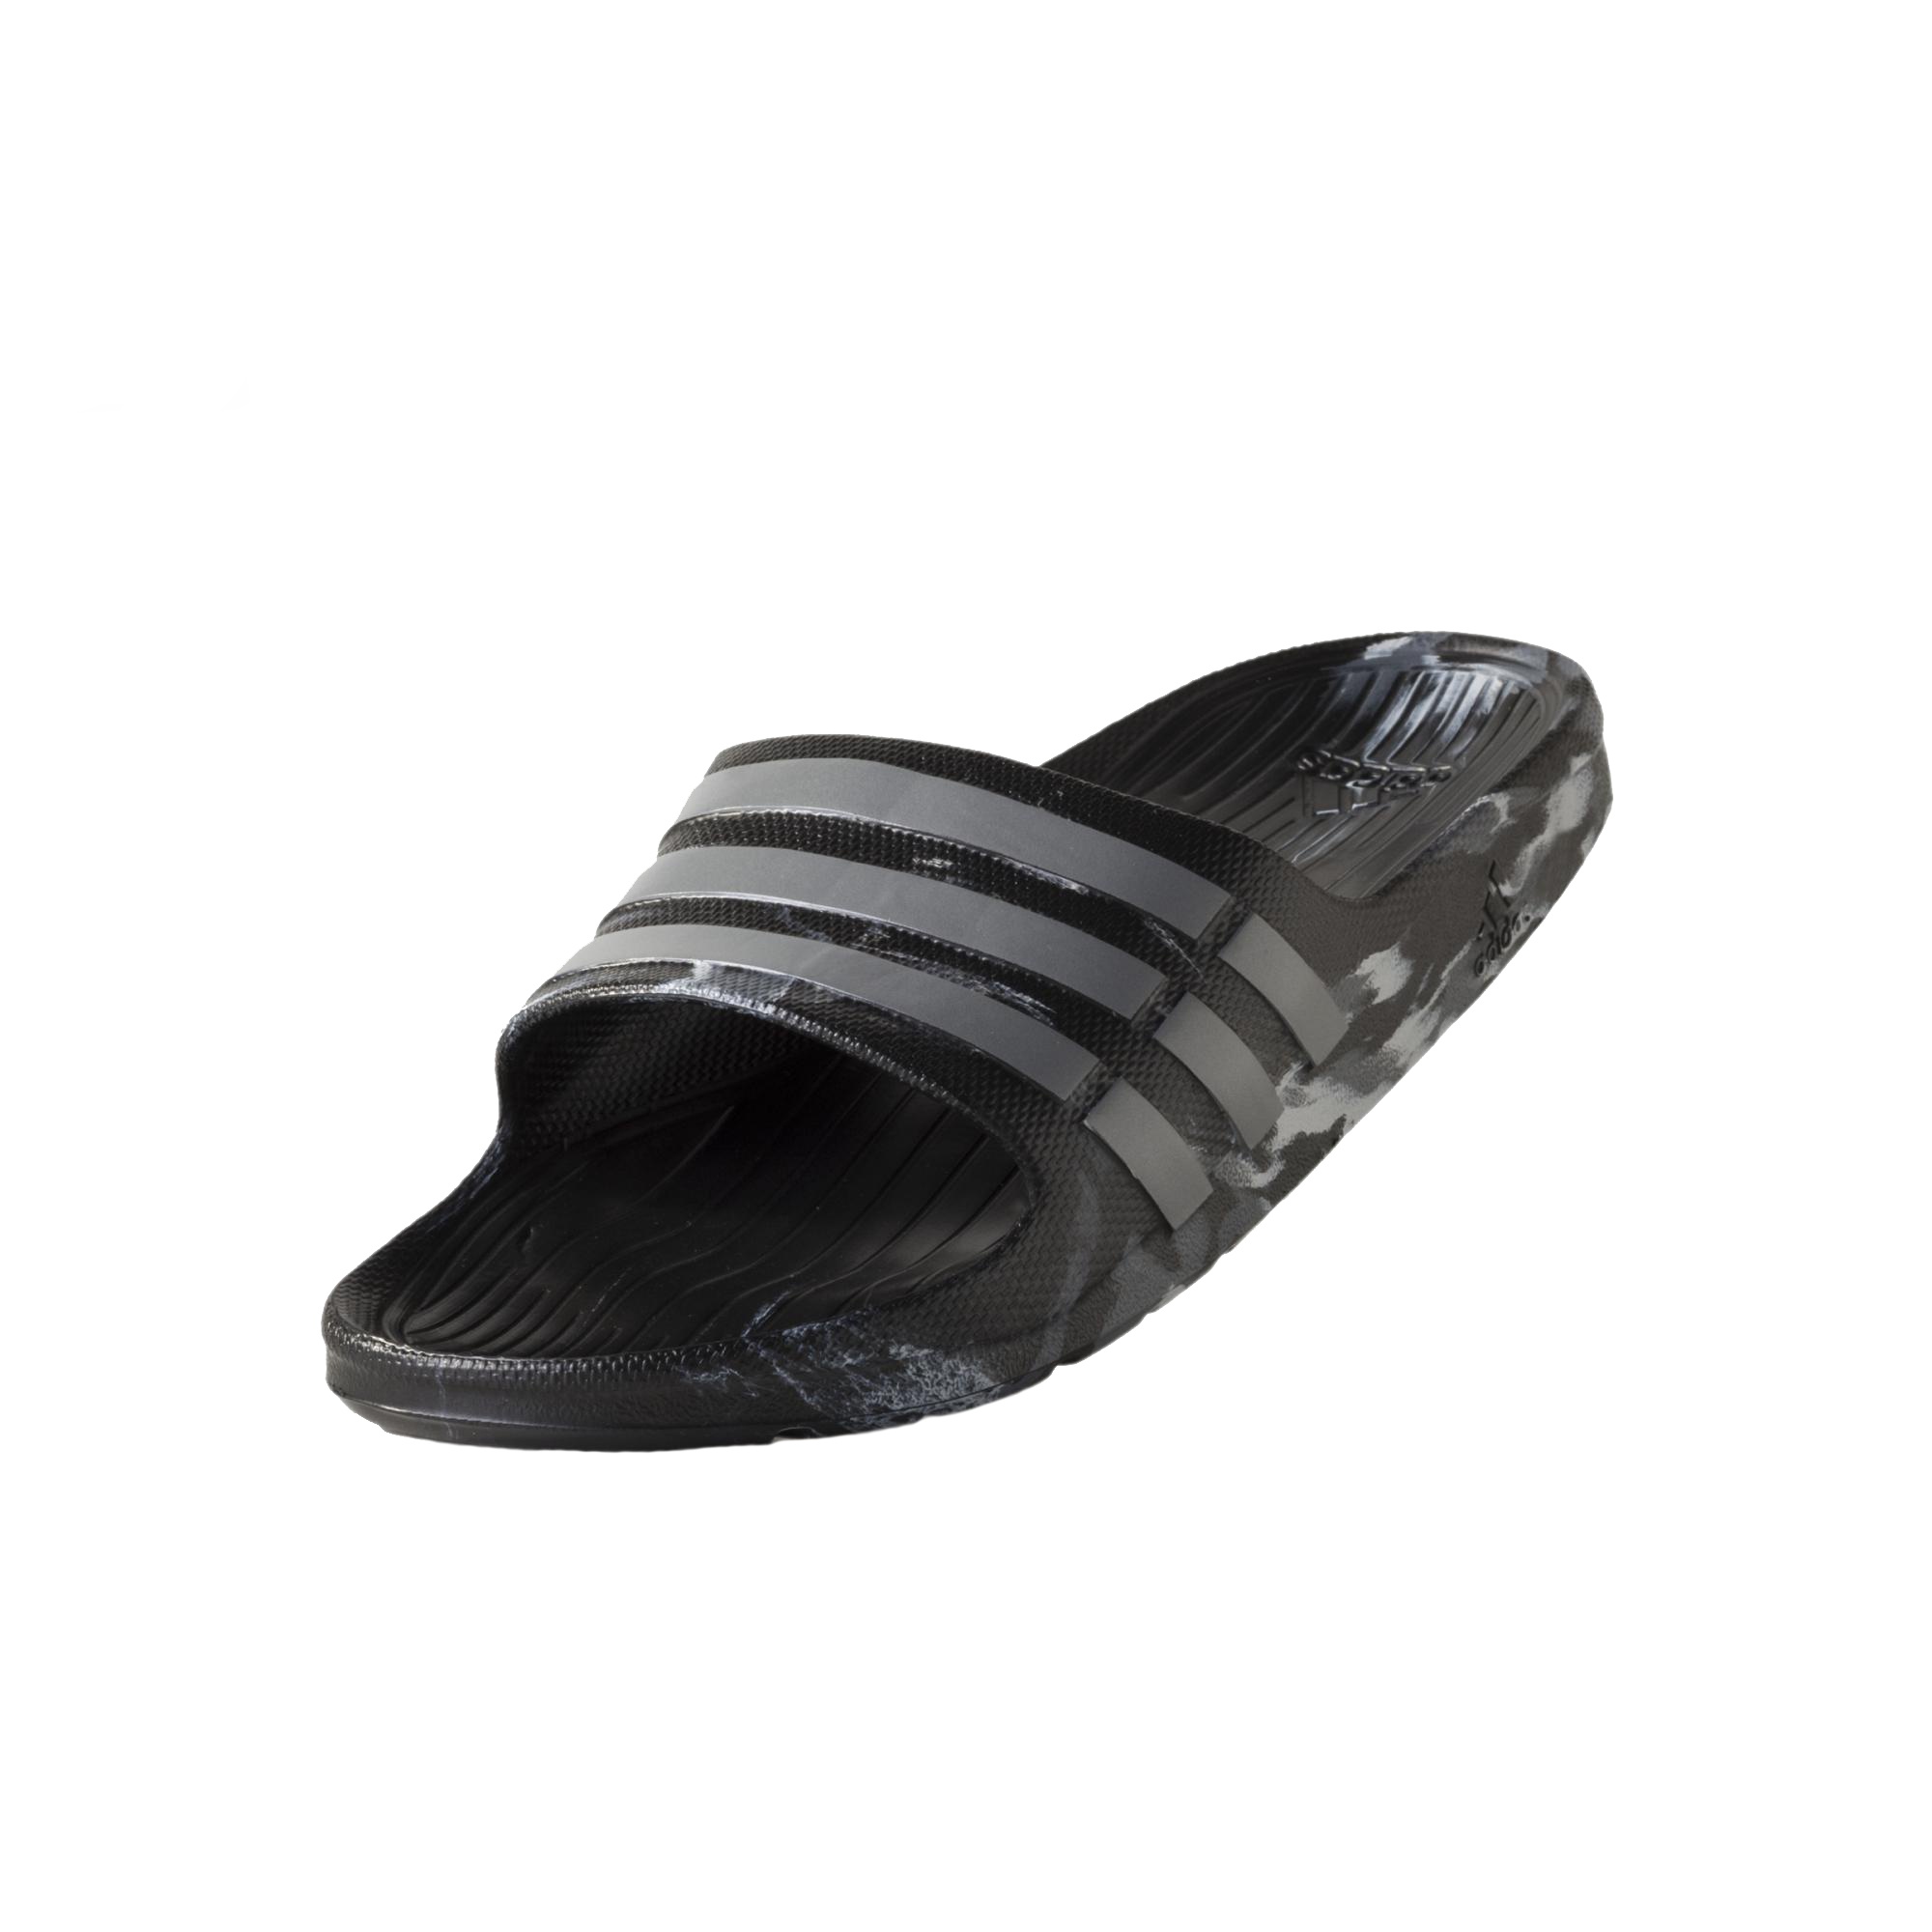 Chanclas Adidas Slide (negro/gris) - manelsanchez.com